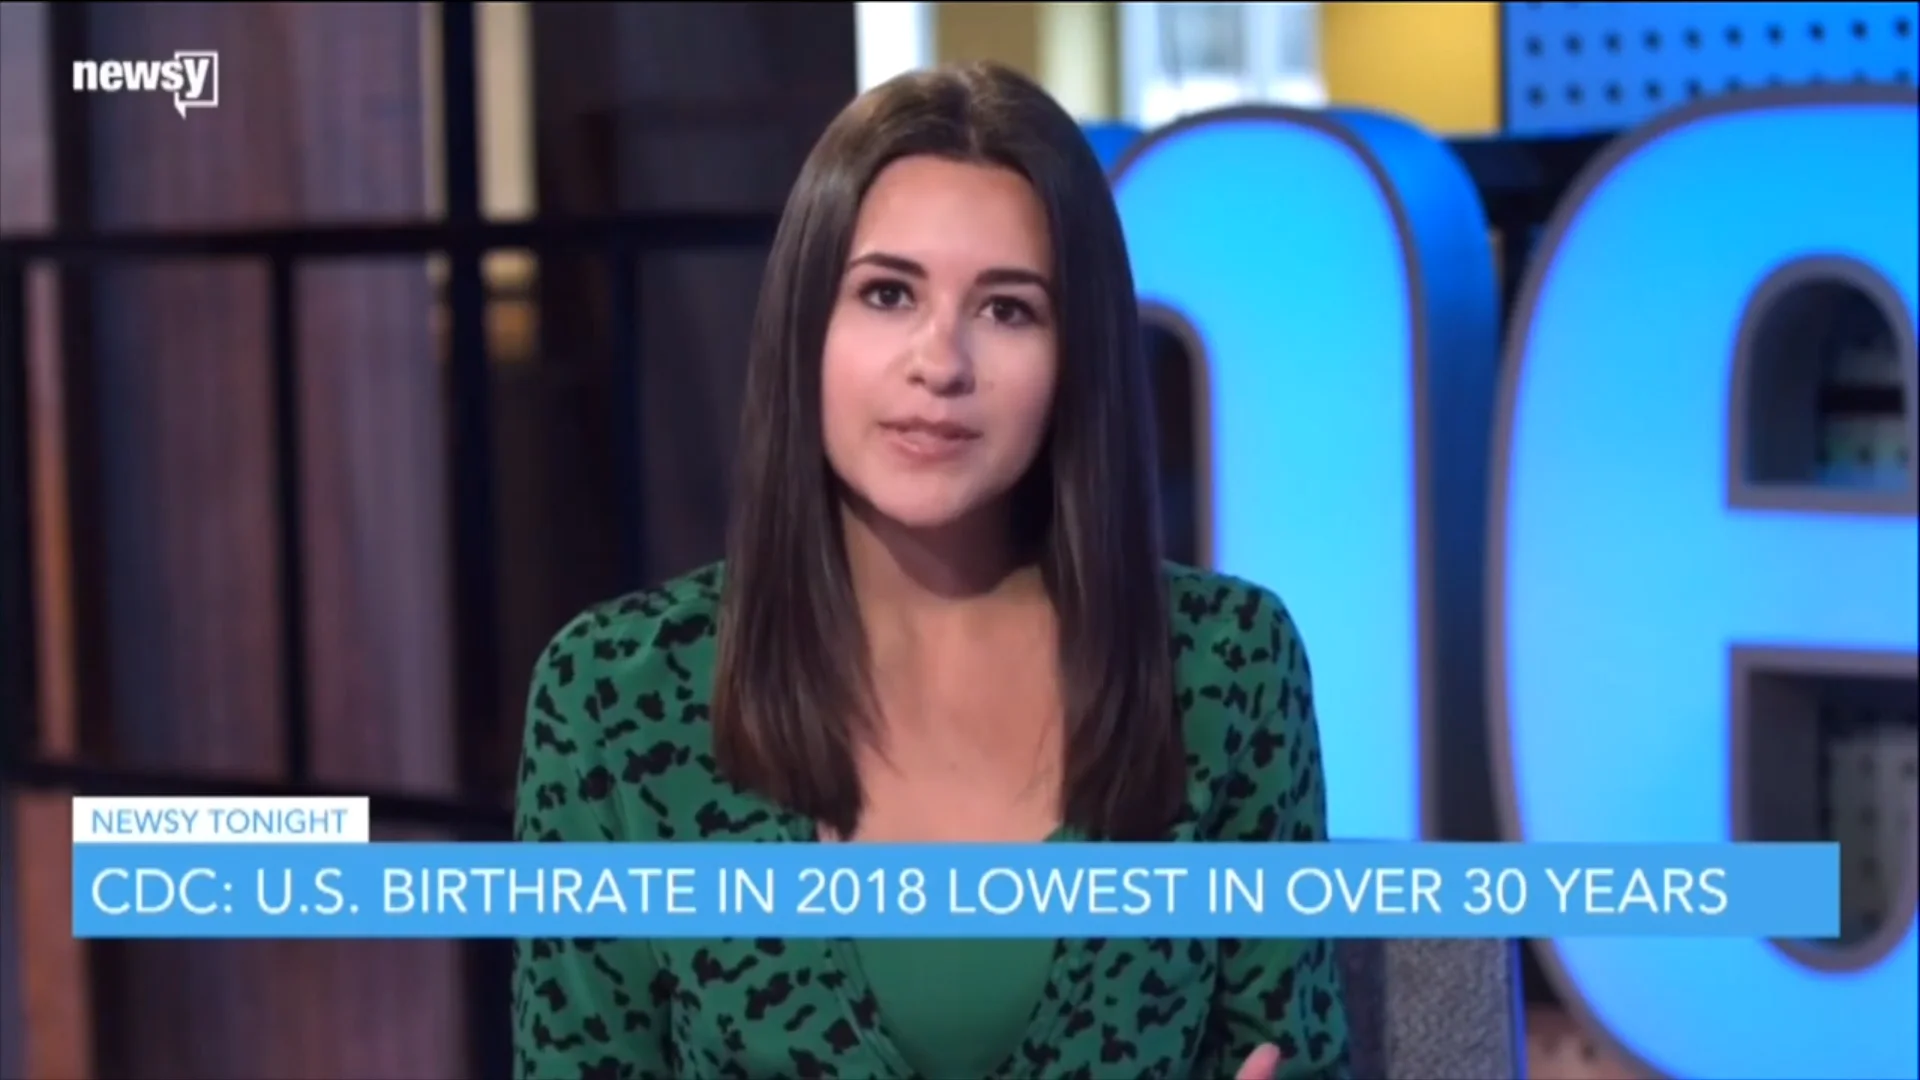 Bianca Facchinei - Bianca Facchinei U.S. Birthrate in 2018 Lowest